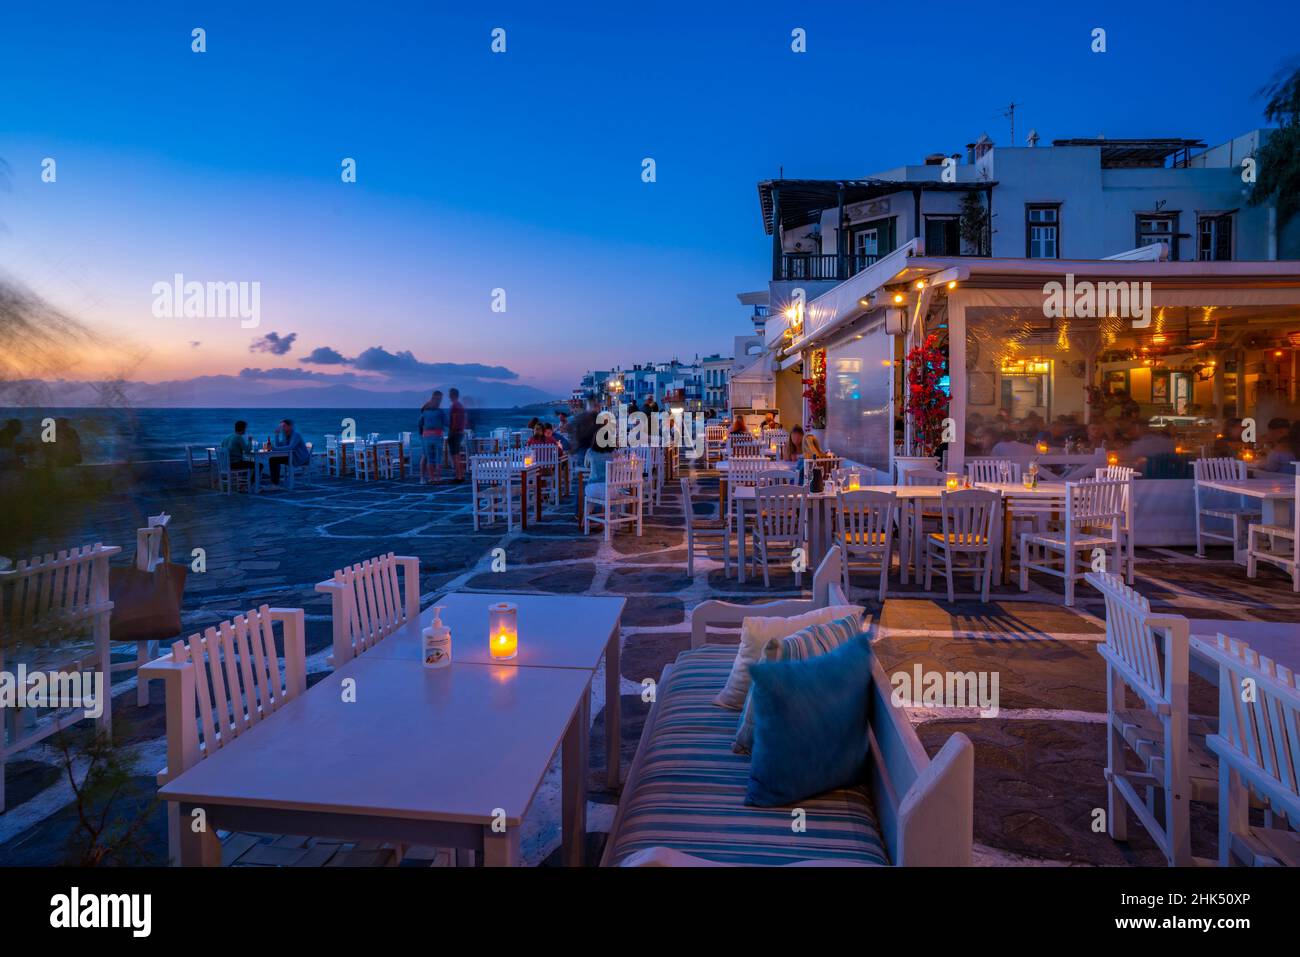 Blick auf die Restaurants im Little Venice in Mykonos-Stadt bei Nacht, Mykonos, Kykladen-Inseln, griechische Inseln, Ägäis, Griechenland, Europa Stockfoto